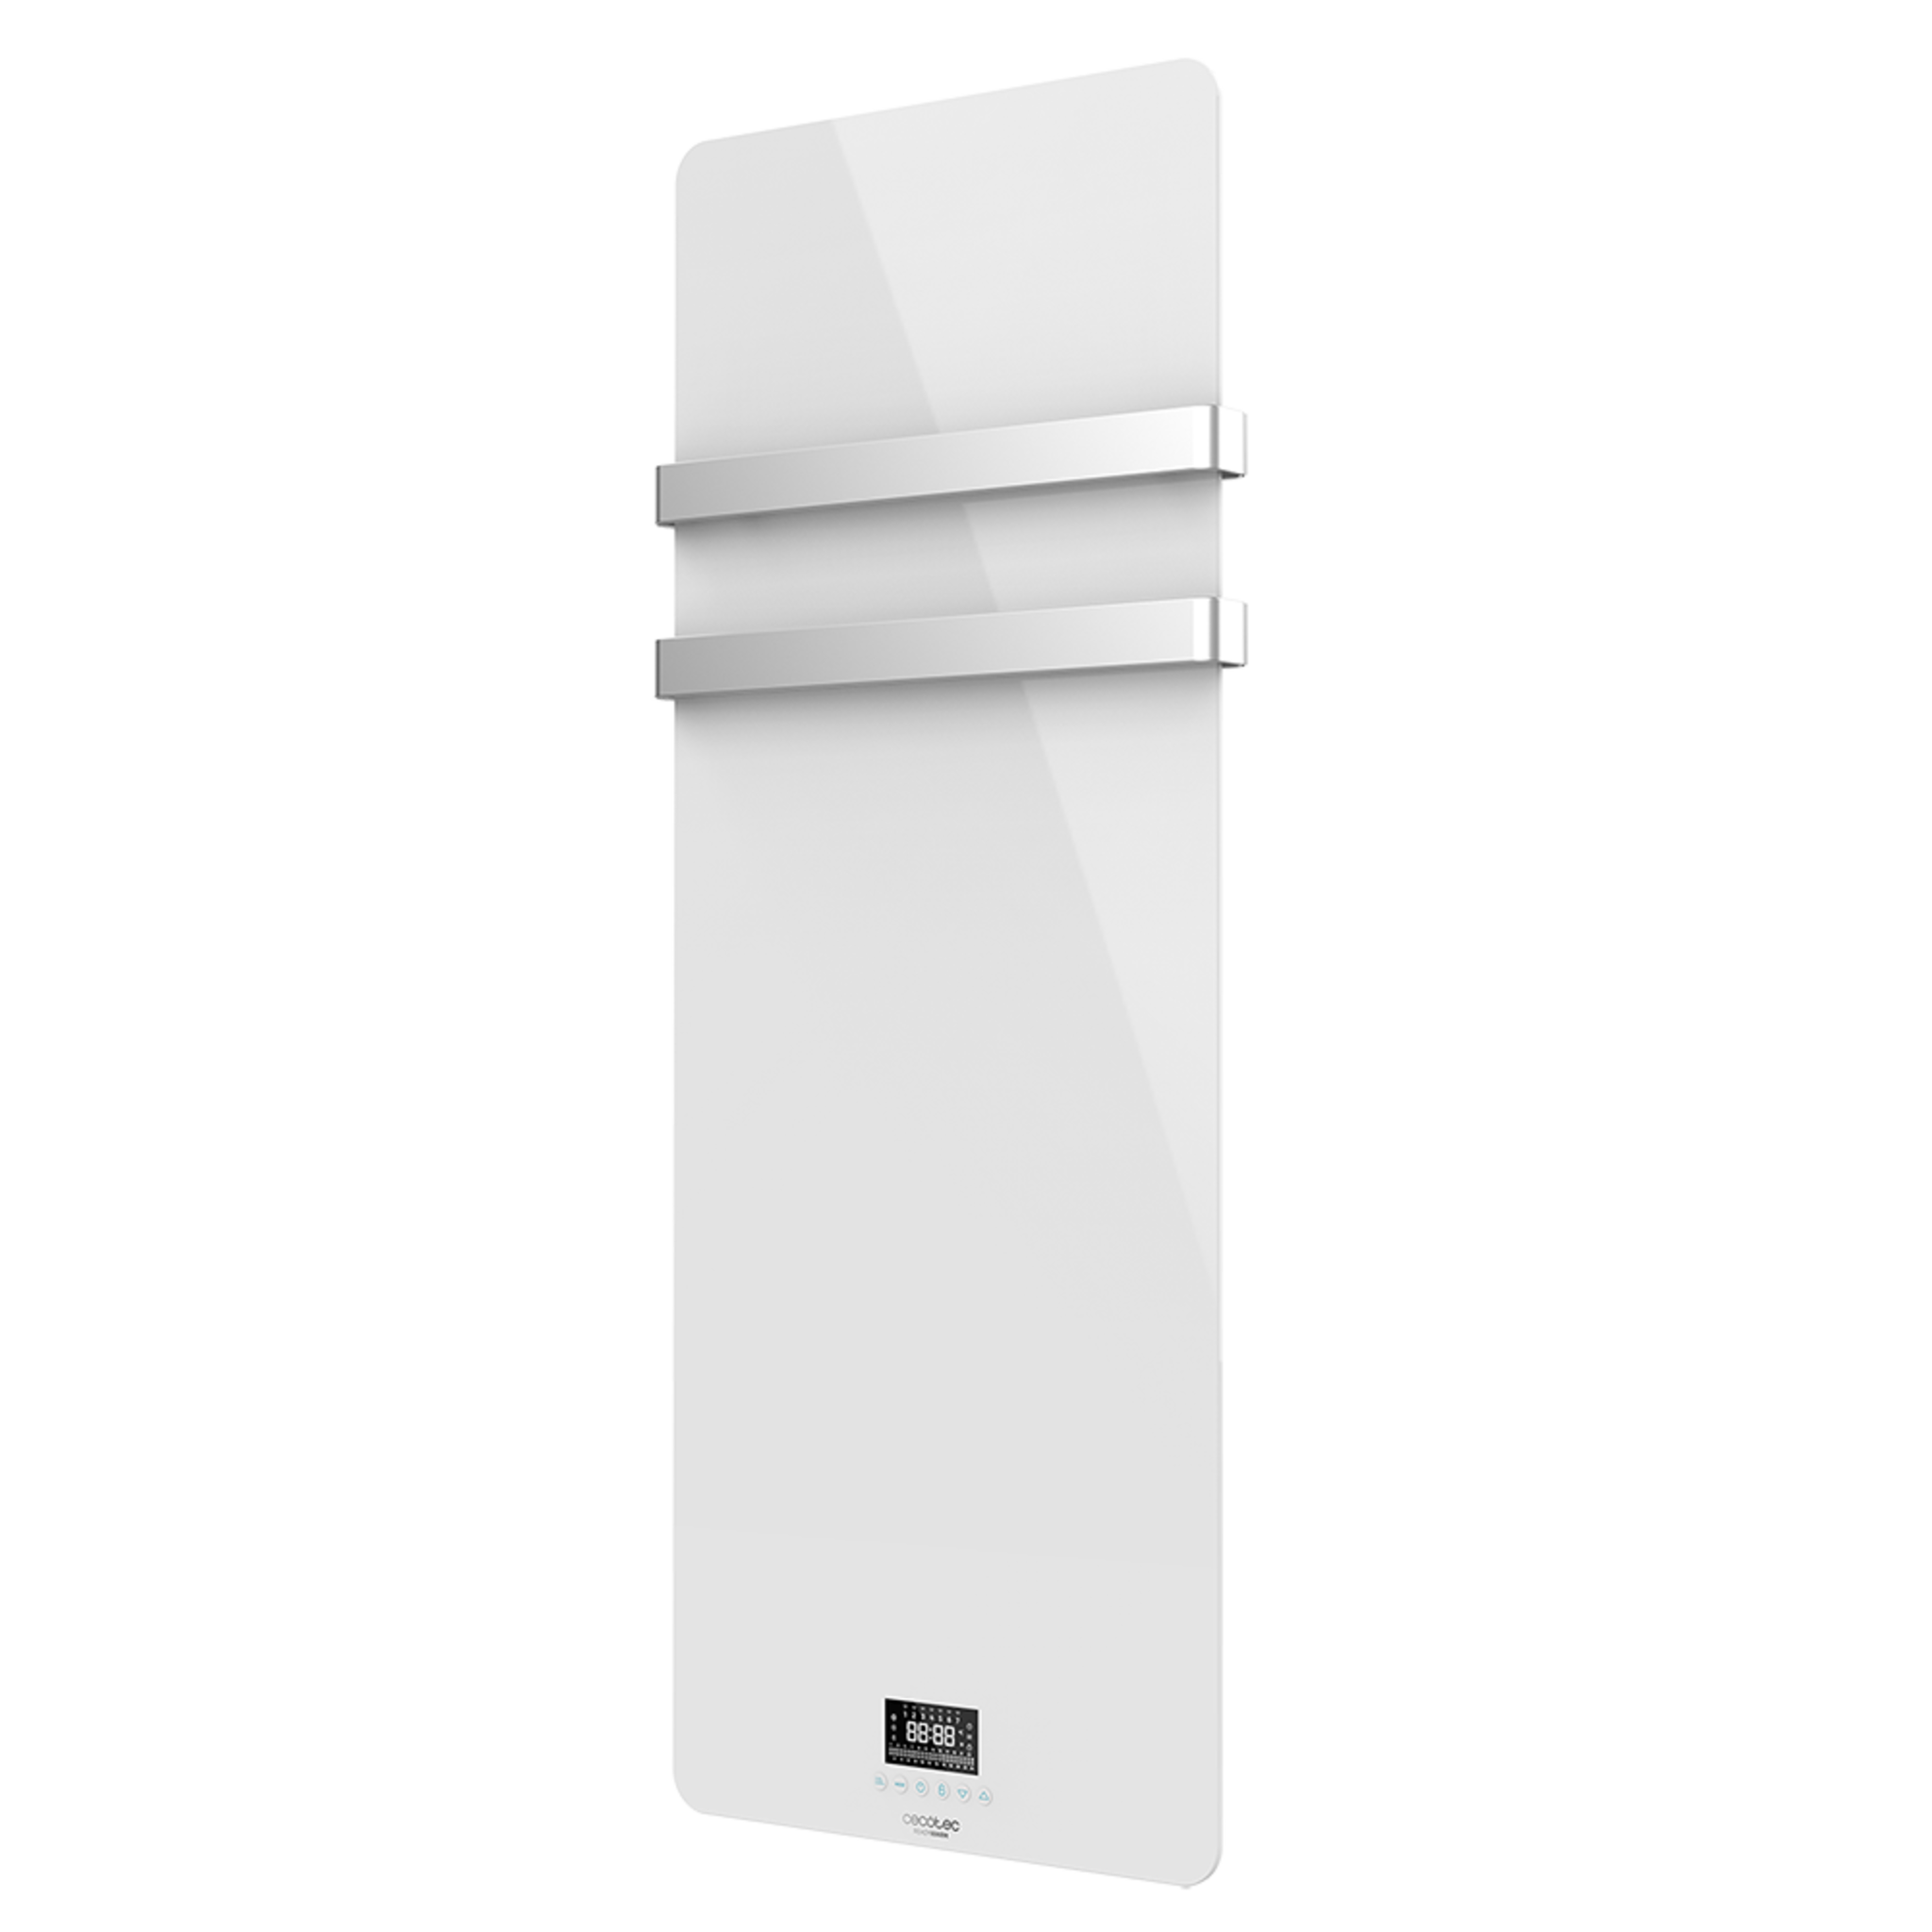 Ready Warm 9870 Crystal Towel White energieeffizienter Badheizkörper 850W, LED-Anzeige, Doppelaufhänger aus Edelstahl, Wochentimer, Fernbedienung, Schutzart IP24